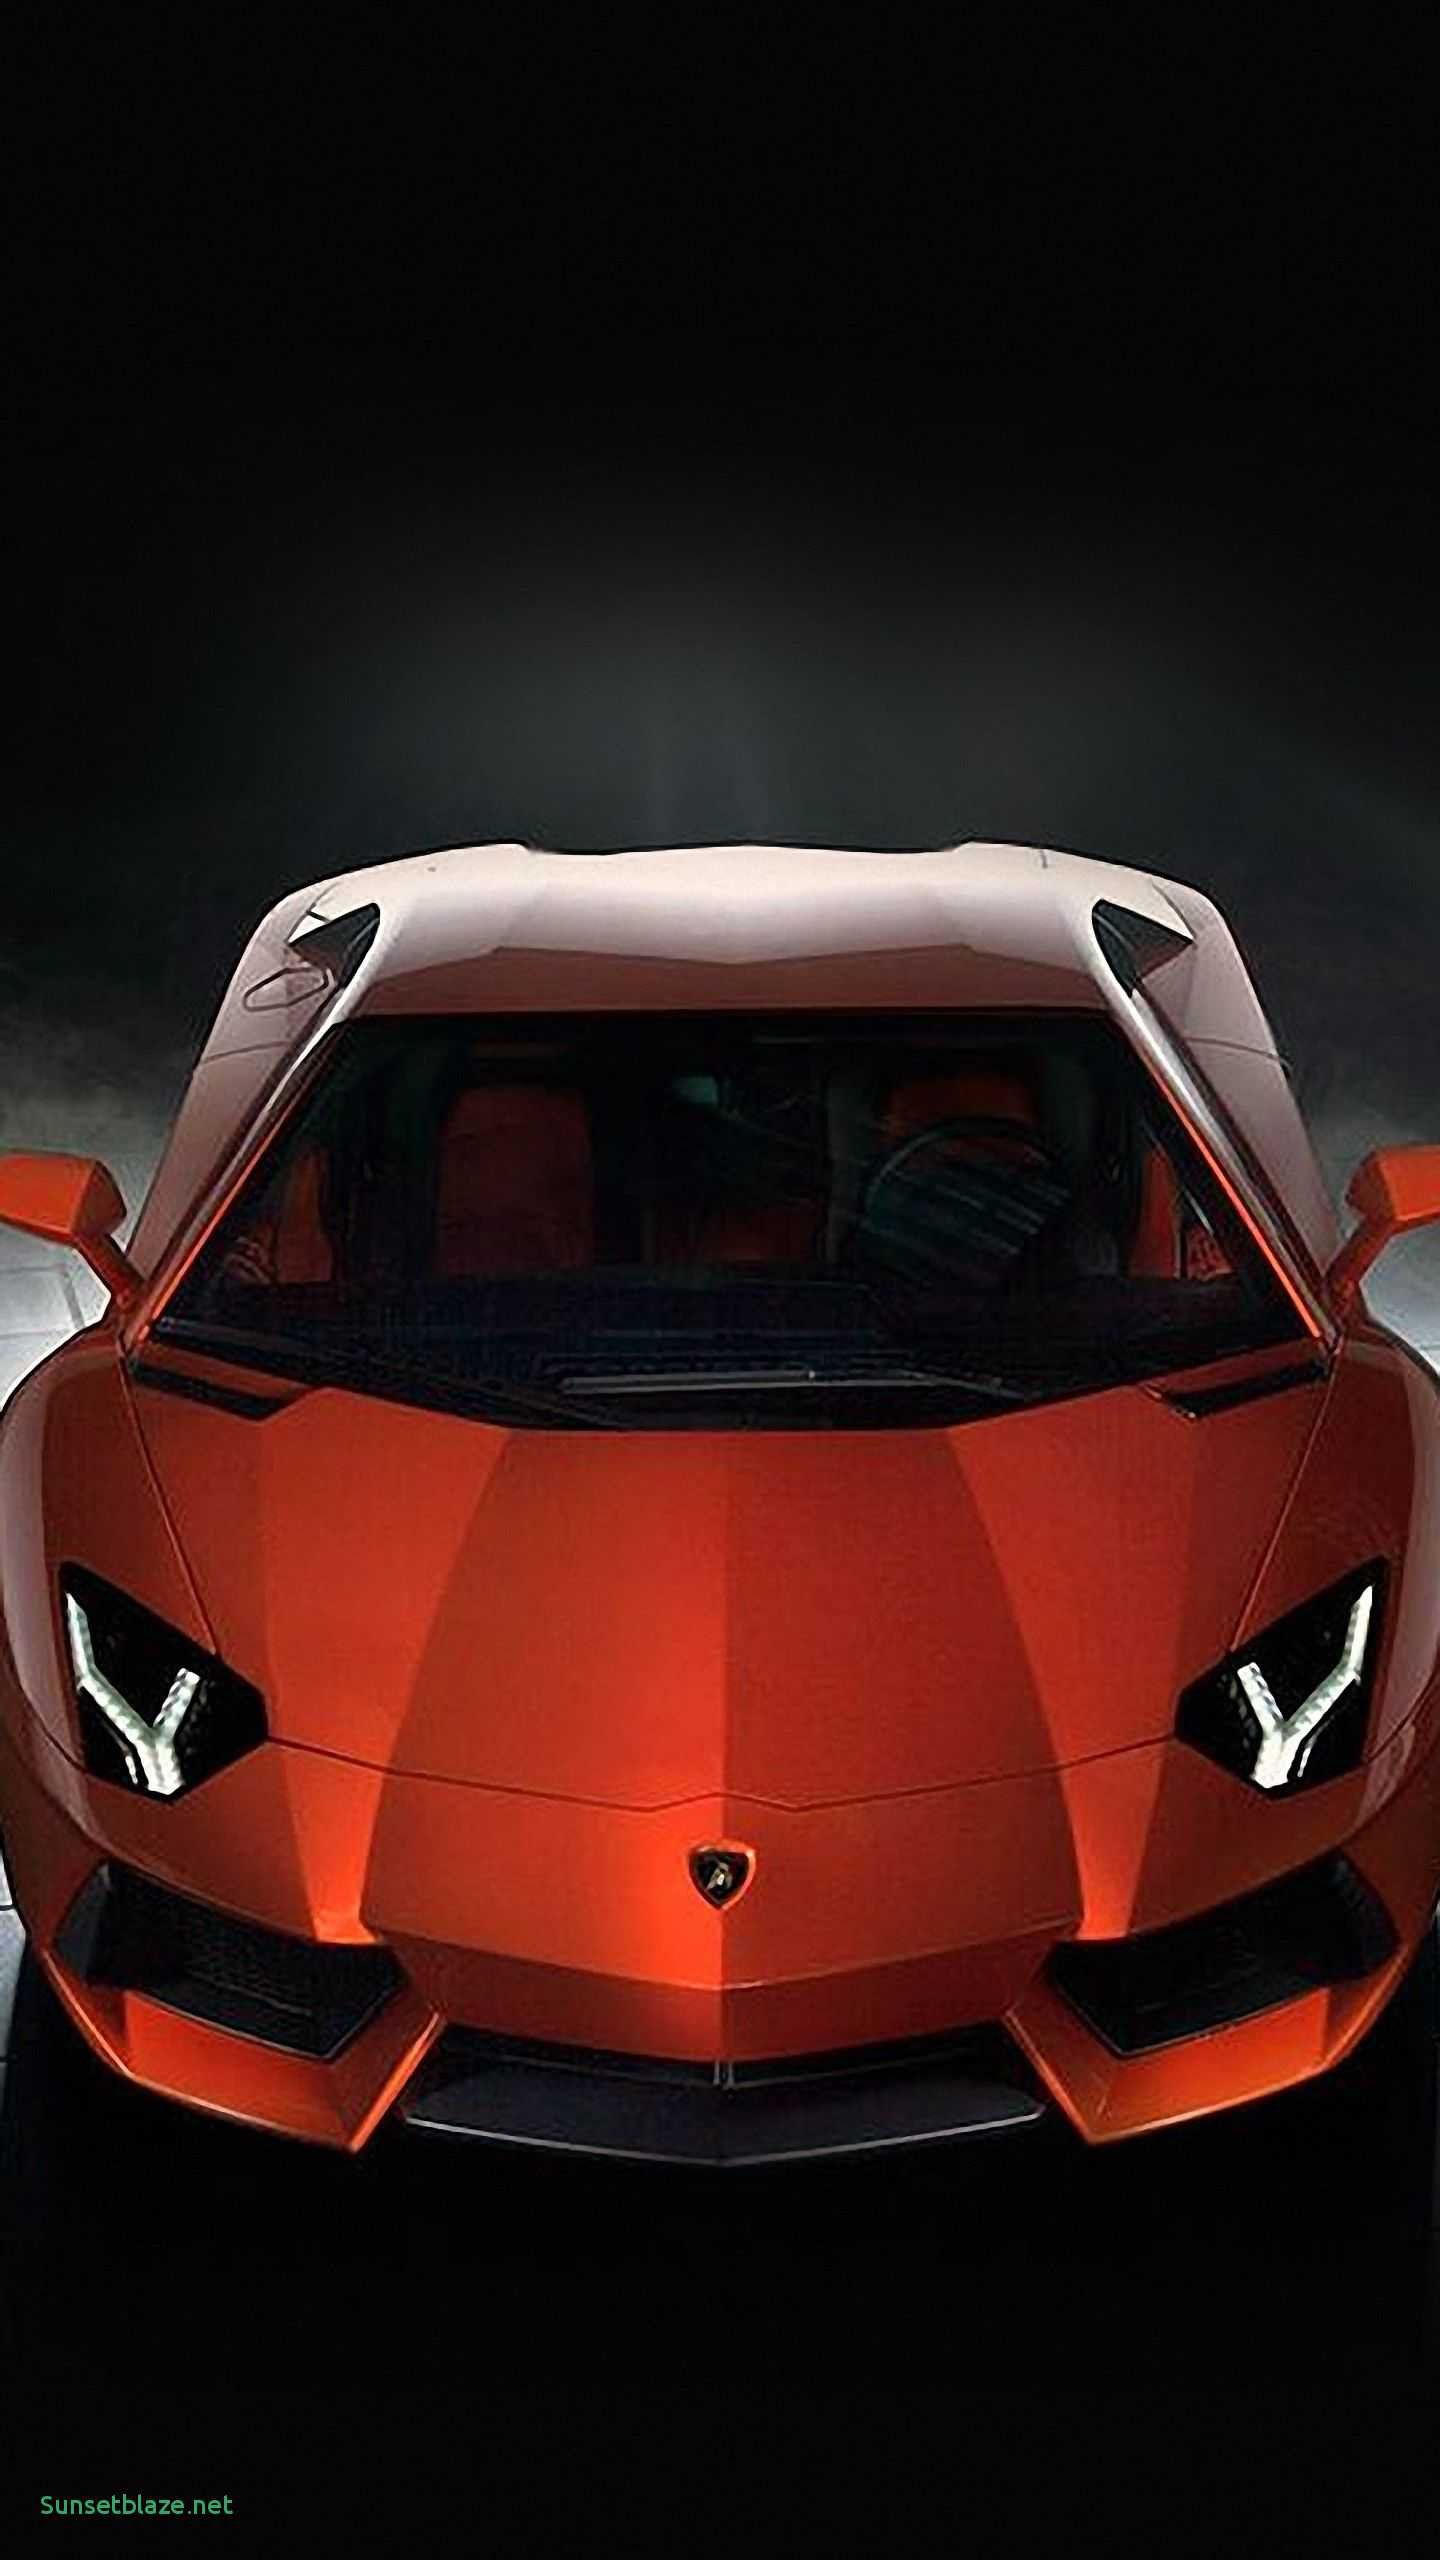 Lamborghini Mobile Wallpapers - Wallpaper Cave